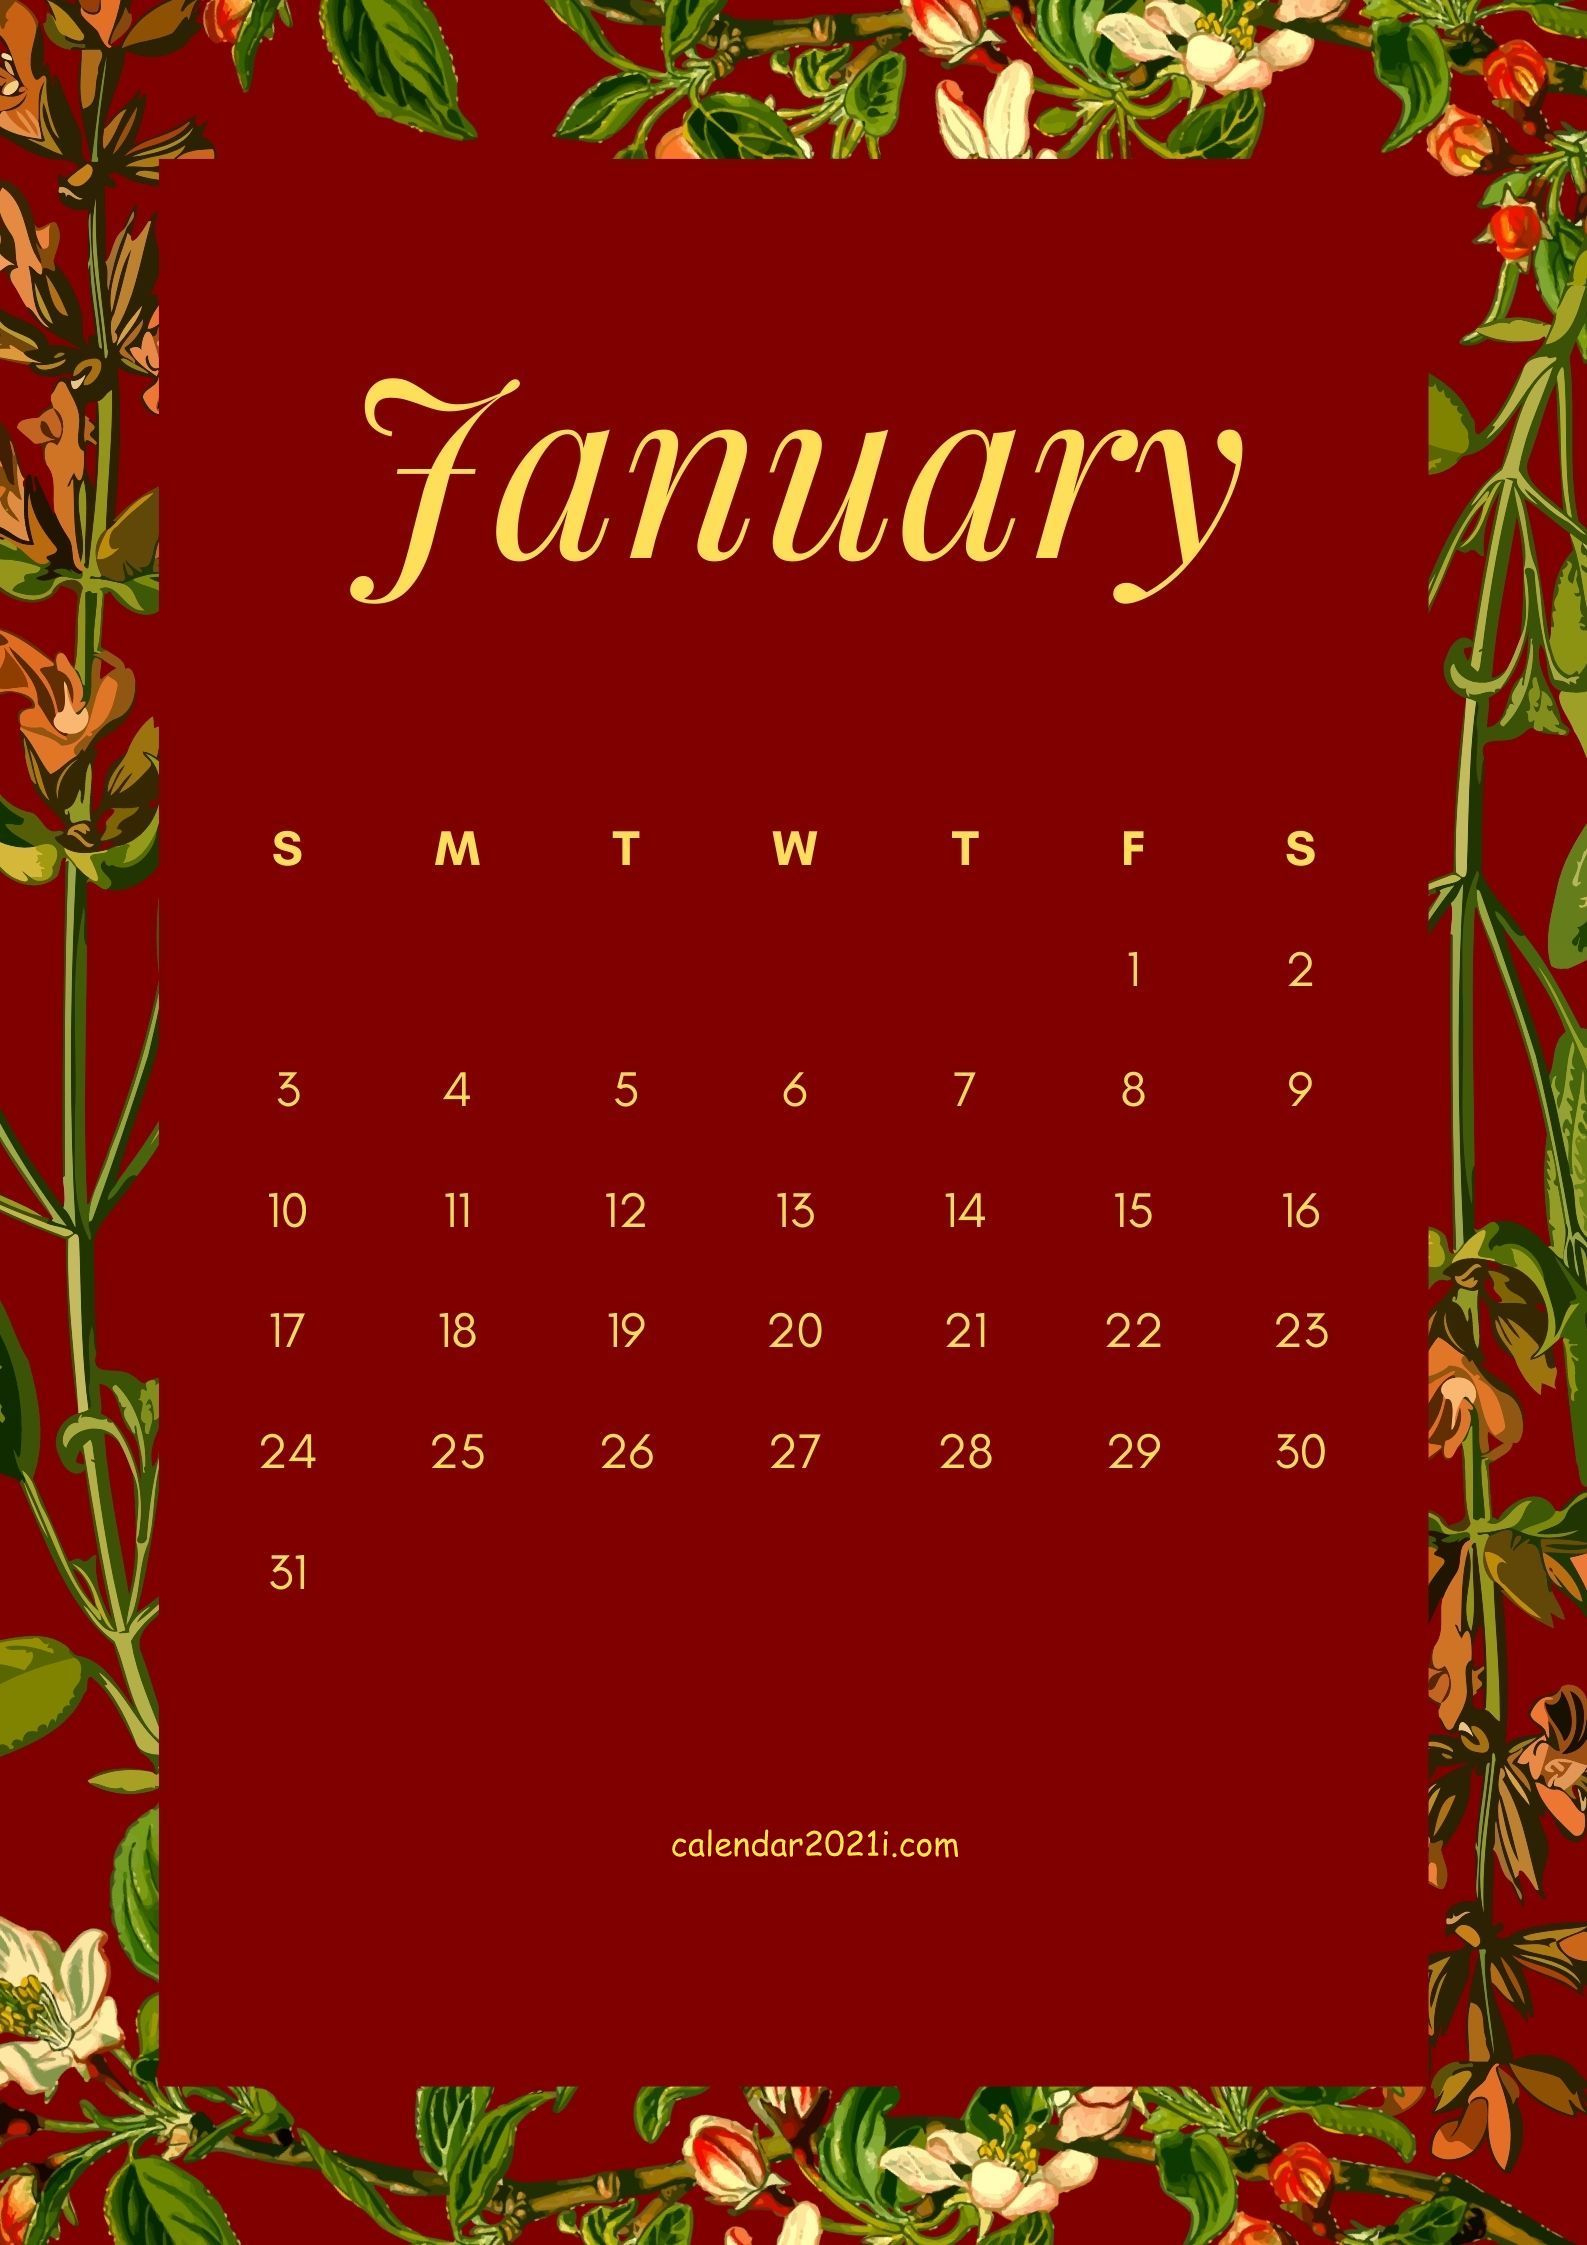 Download January 2021 Flower Calendar Template Featuring December 2021 Calendar Wallpaper